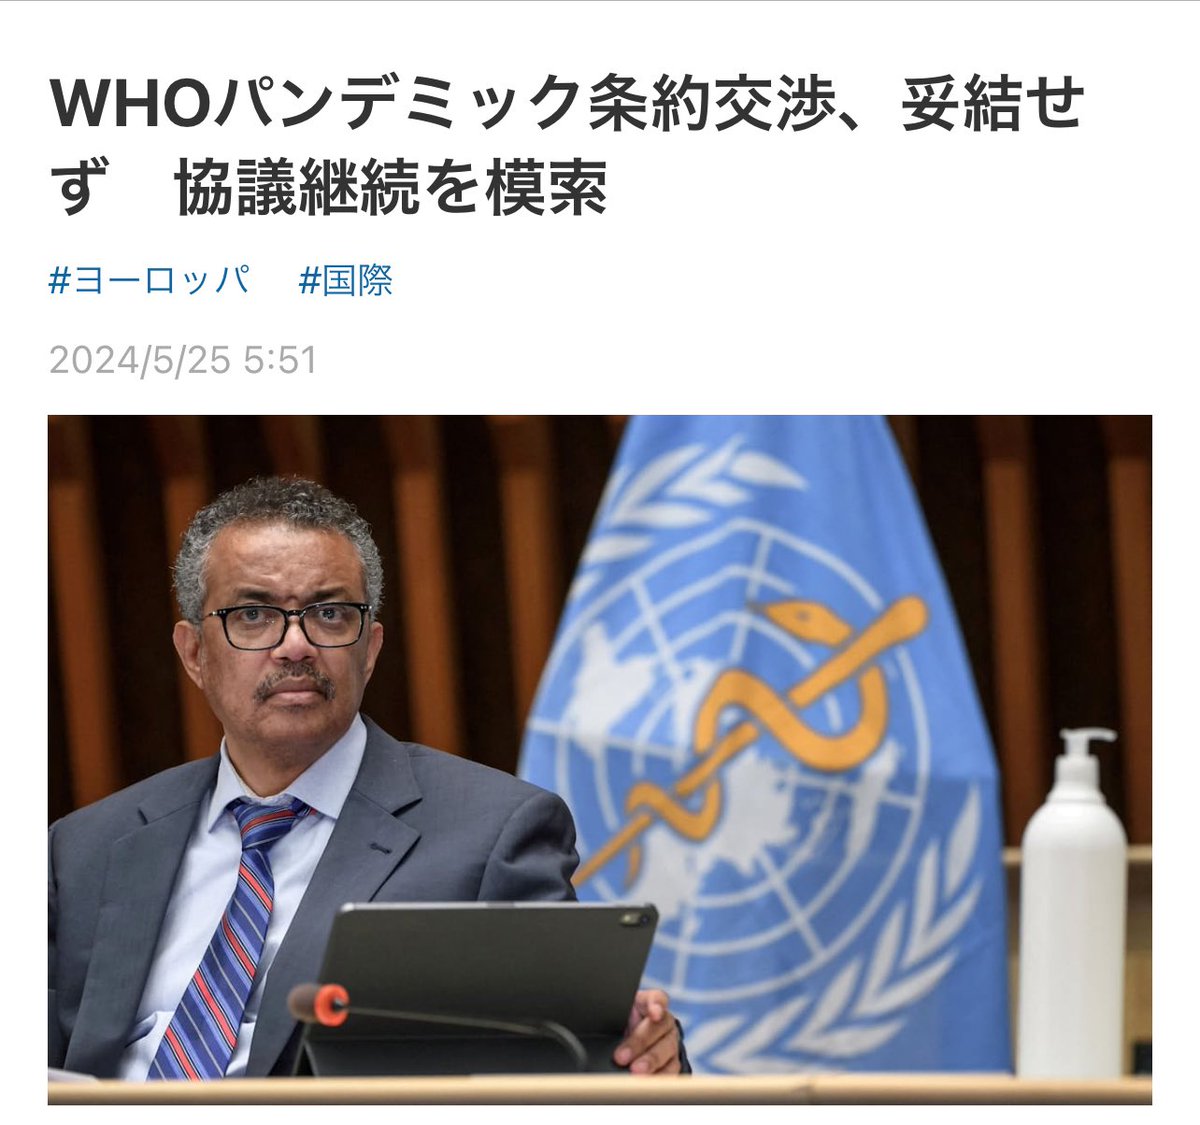 【速報】 5/24 パンデミック条約は締結せず、交渉打切り 194のWHO加盟国はパンデミック条約条文案に合意できないまま2年以上の交渉を終了、5/27から始まる第77回世界保健総会での採択は不可能 世界中の人々はWHOの独裁を許さなかった、日本人の皆さん次は改憲阻止ですよ！ nikkei.com/article/DGXZQO…